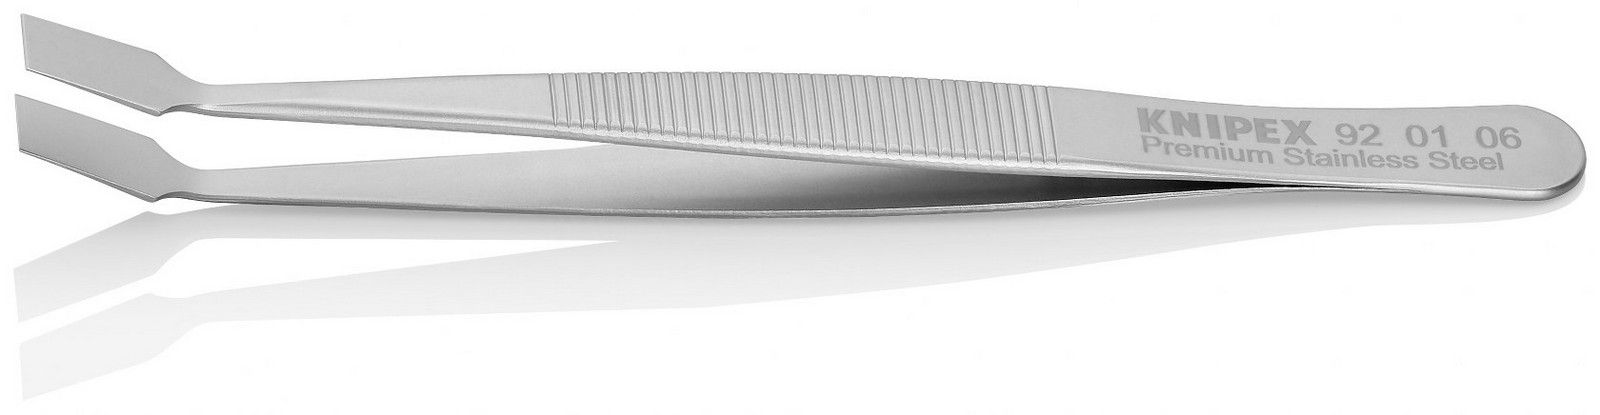 Knipex univerzalna kriva pljosnata pinceta 120mm pod 30° (92 01 06)